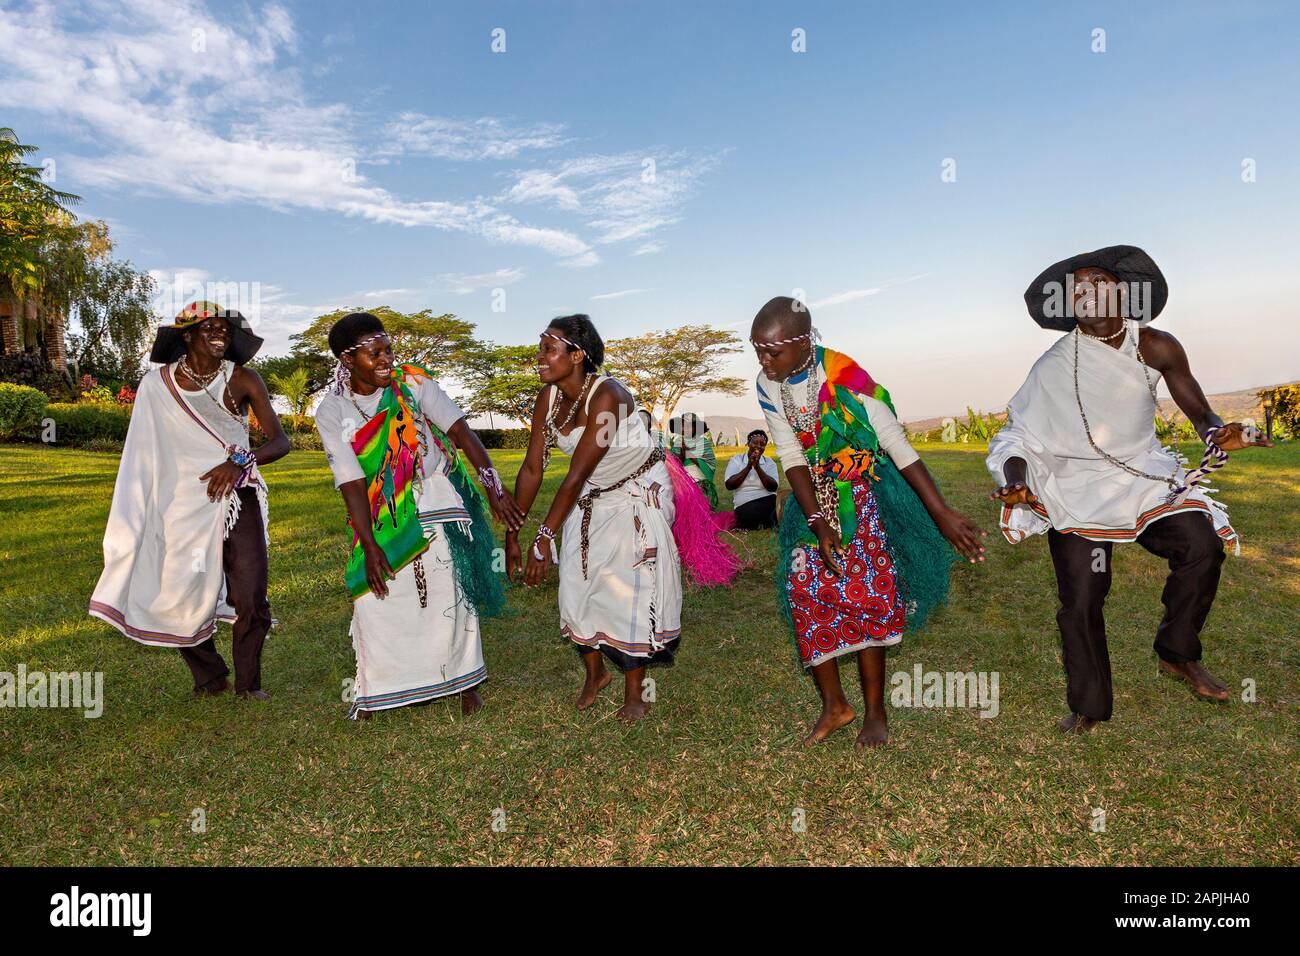 Tribal people perform local dance in Kitwa, Uganda Stock Photo